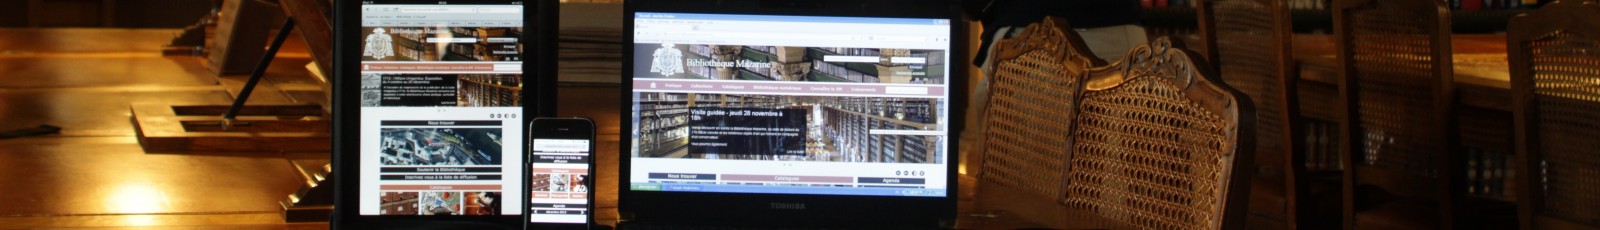 Le nouveau site Web de la Bibliothèque Mazarine, accessible depuis mobiles et tablettes